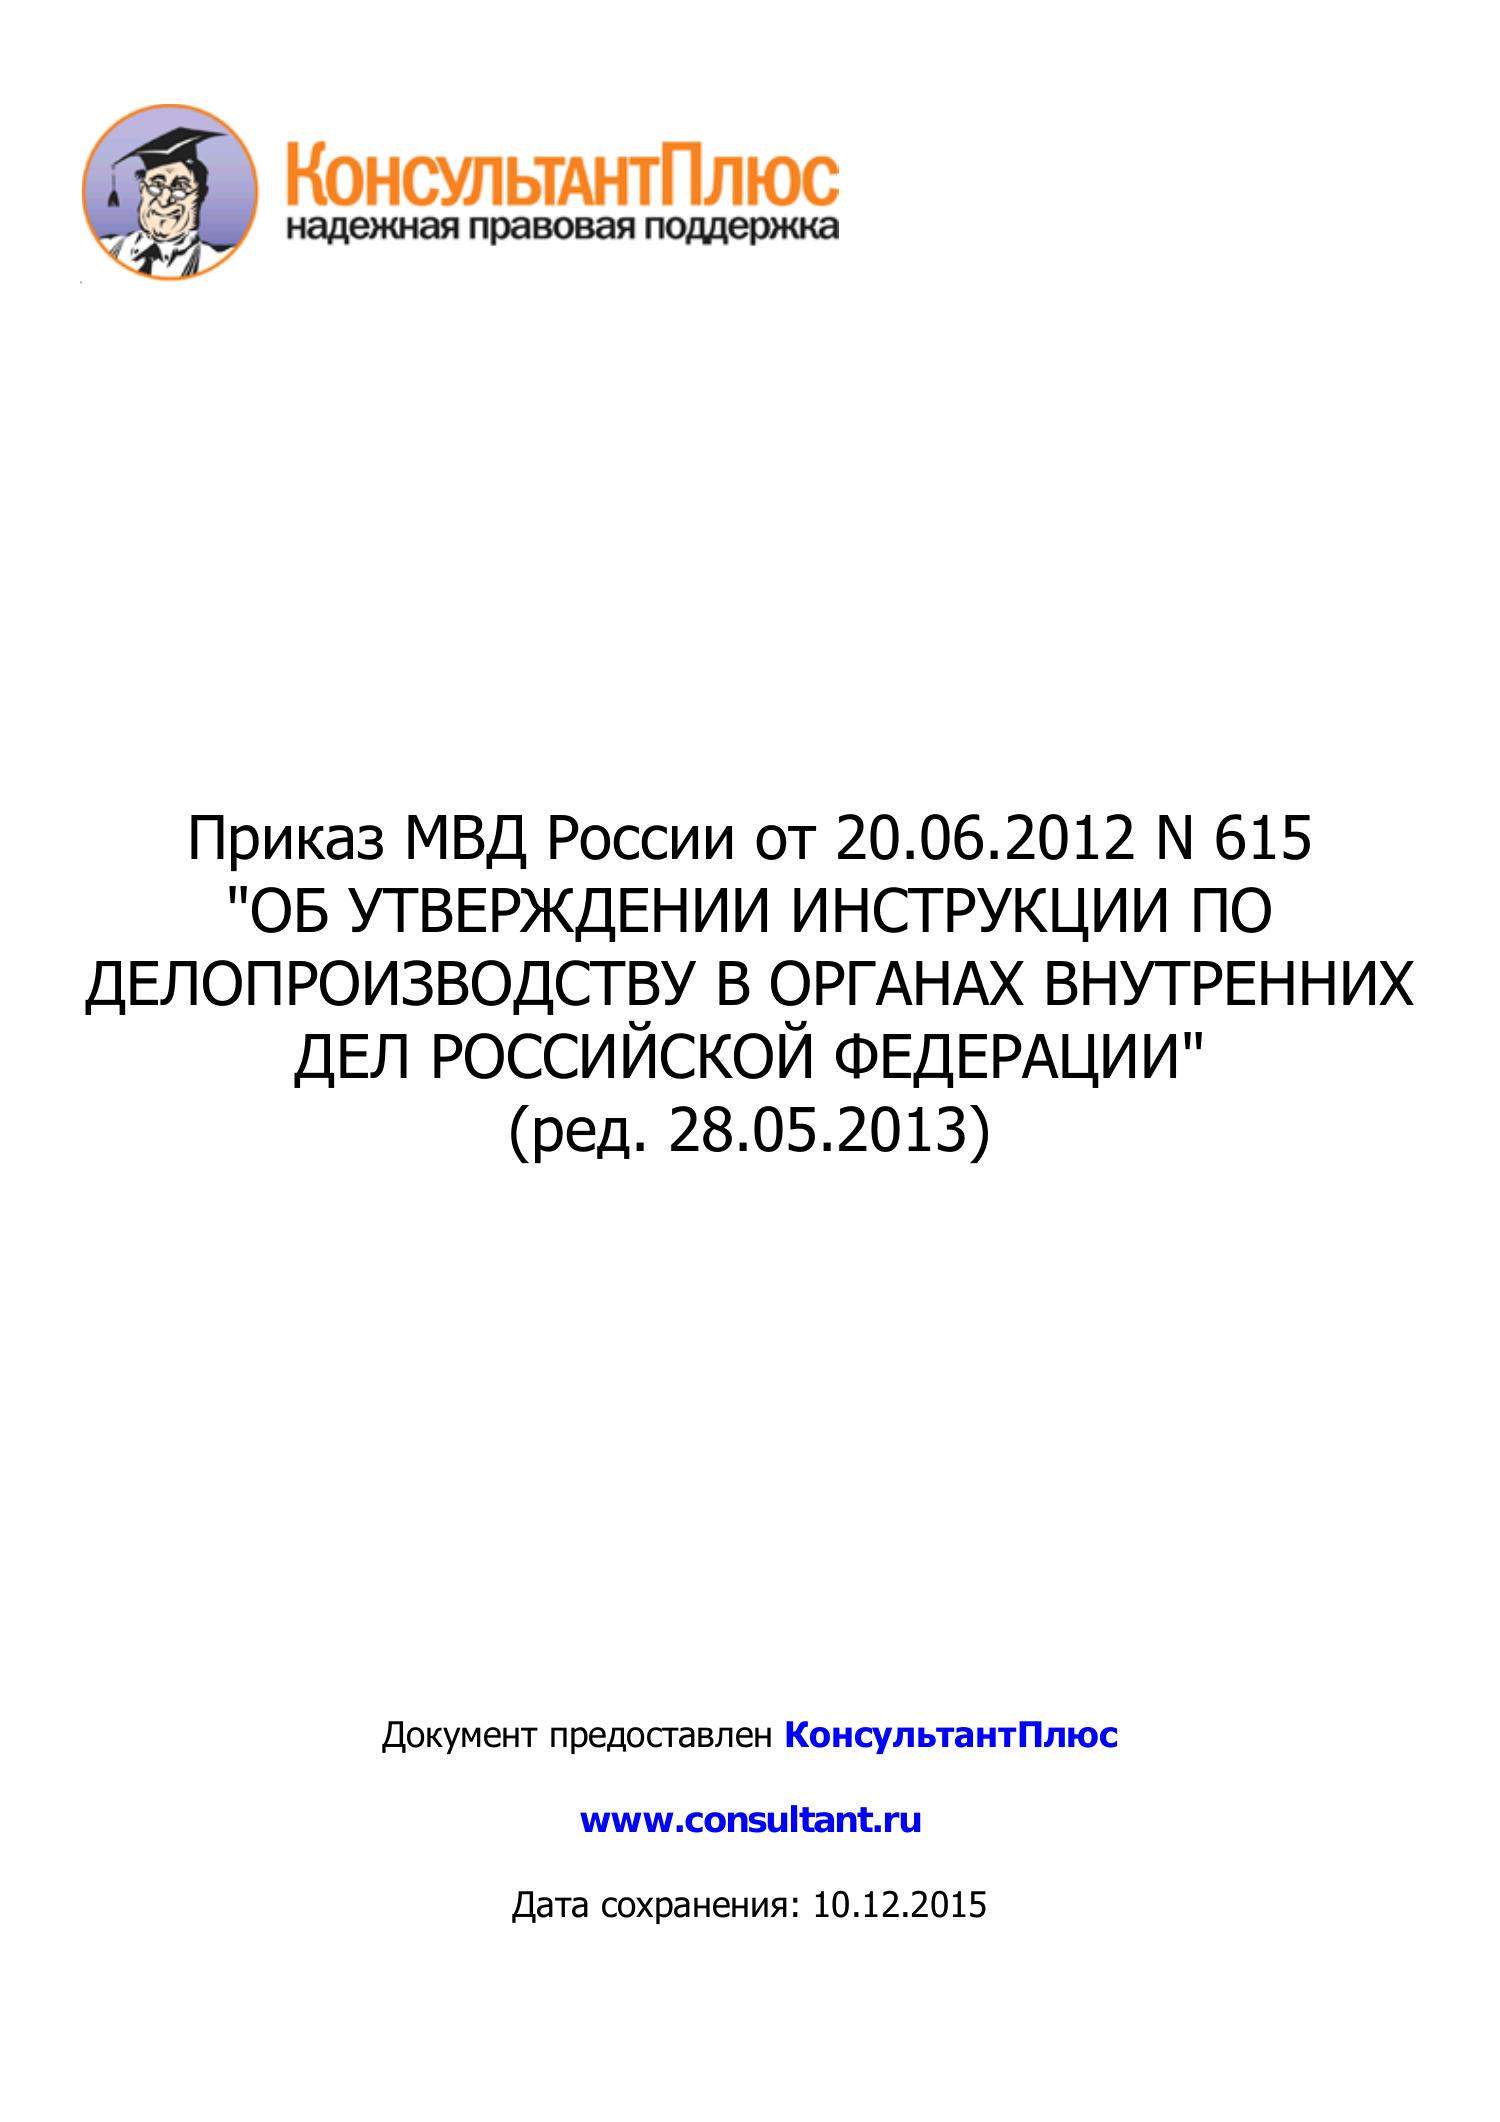 Приказ 615 от 20.06 2012 мвд россии